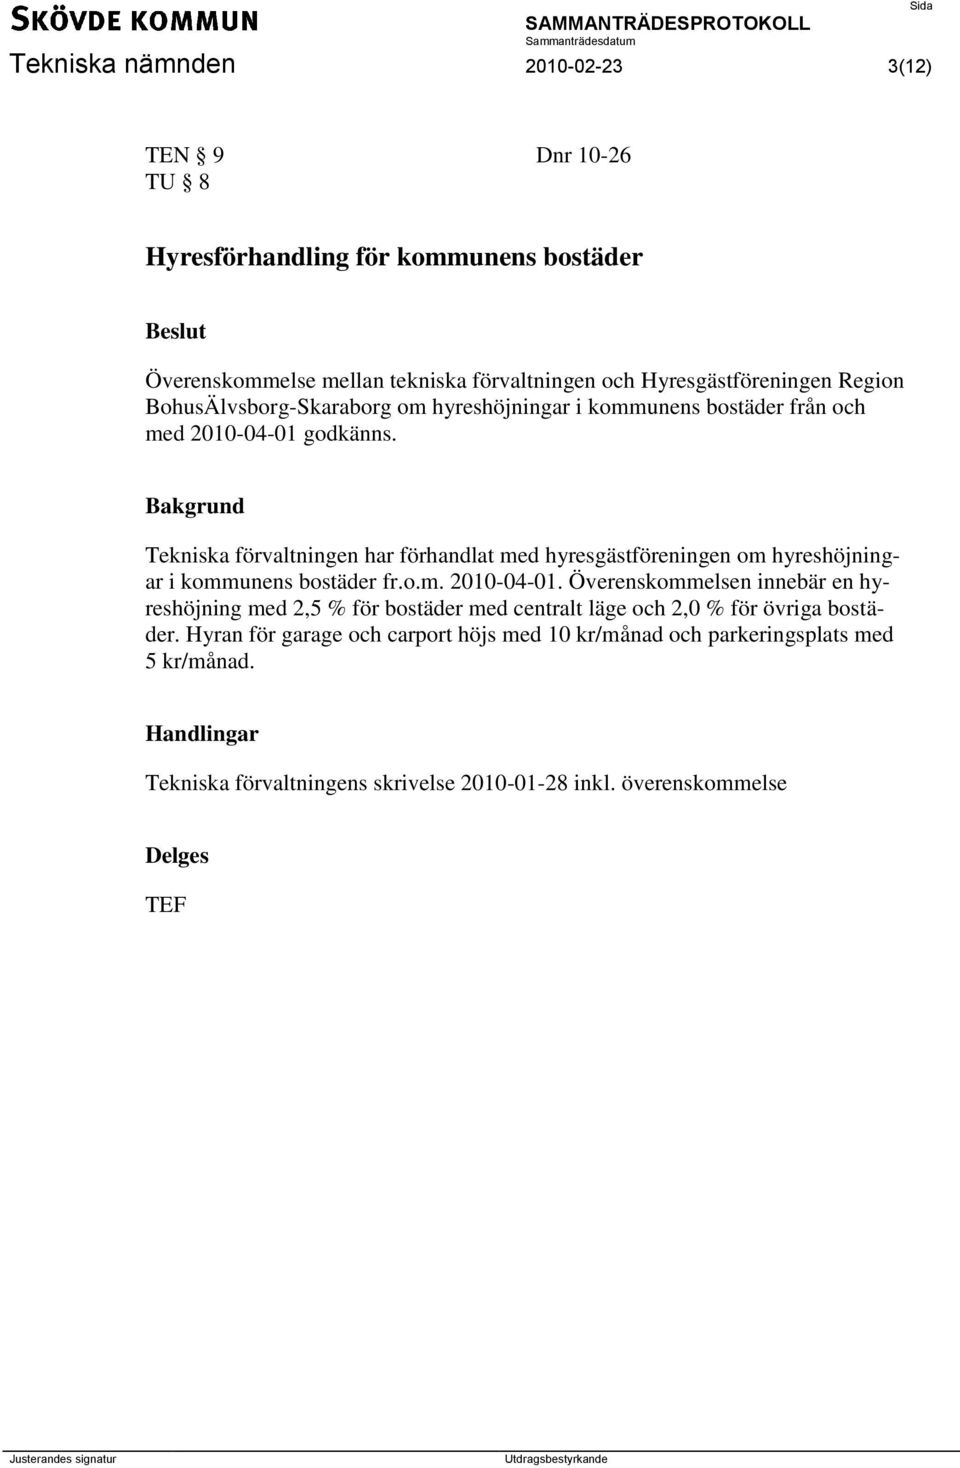 Bakgrund Tekniska förvaltningen har förhandlat med hyresgästföreningen om hyreshöjningar i kommunens bostäder fr.o.m. 2010-04-01.